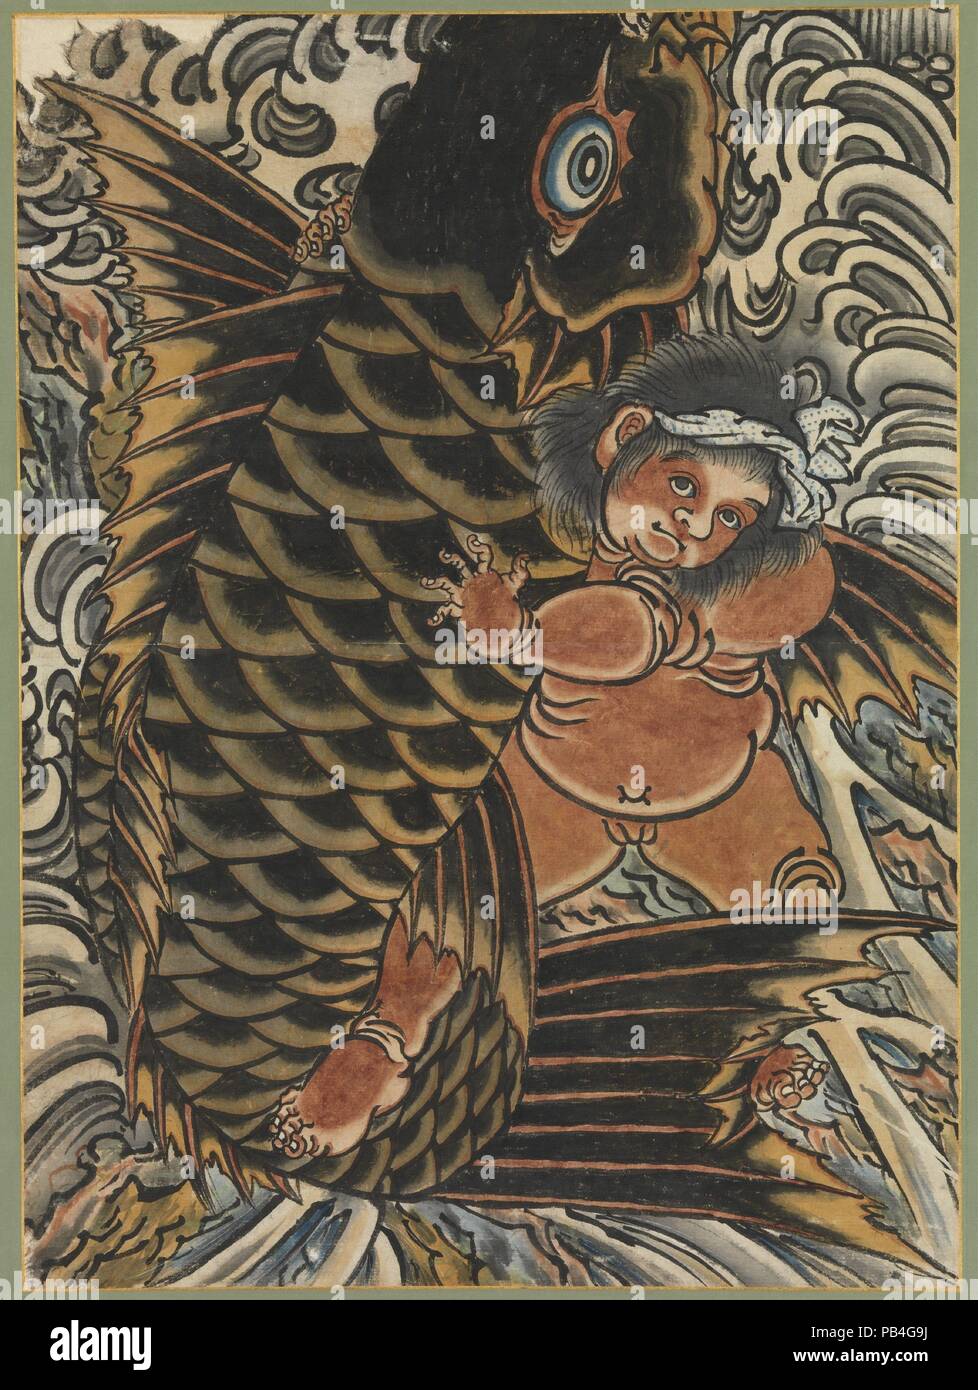 Kintaro avec Carp. Culture : le Japon. Dimensions : Image : 23 3/4 x 17 1/2 in. (60,4 x 44,5 cm) Total : 56 1/8 x 24 3/4''. (142,6 x 62,9 cm). Date : du 19e siècle. Musée : Metropolitan Museum of Art, New York, USA. Banque D'Images